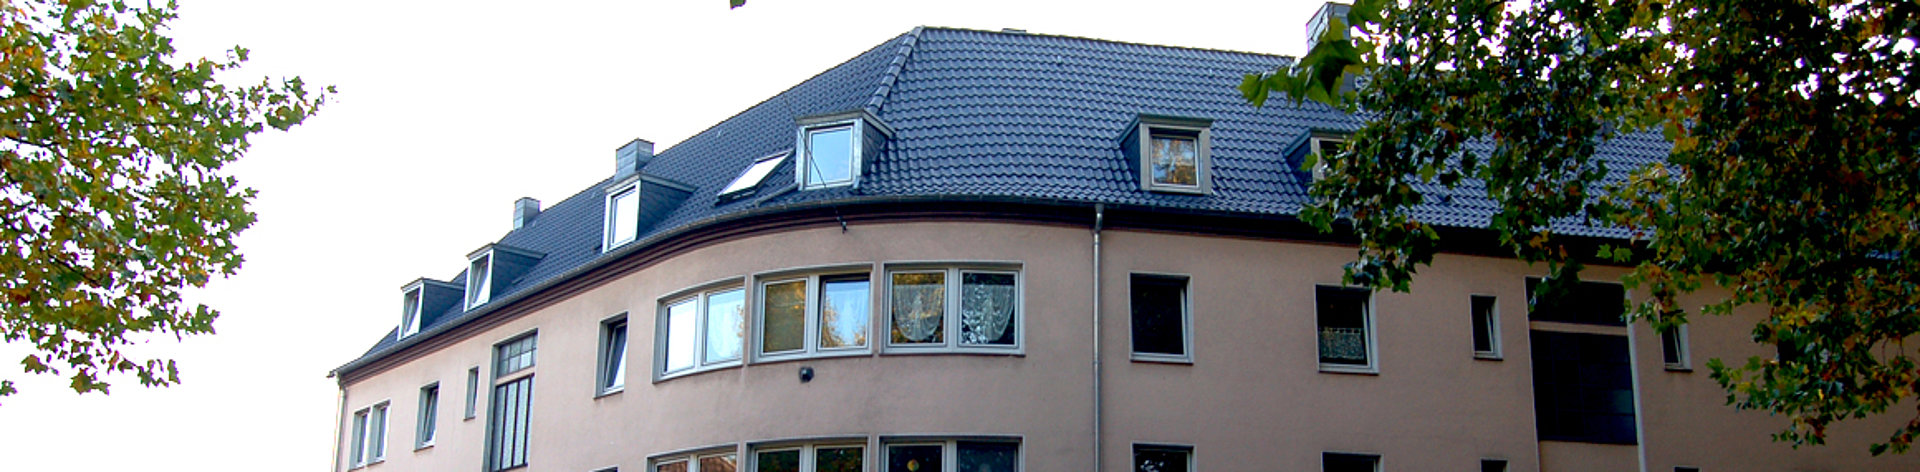 Energetische Sanierung eines Mehrfamilienhauses,  Eindeckung aus Dachsteinen